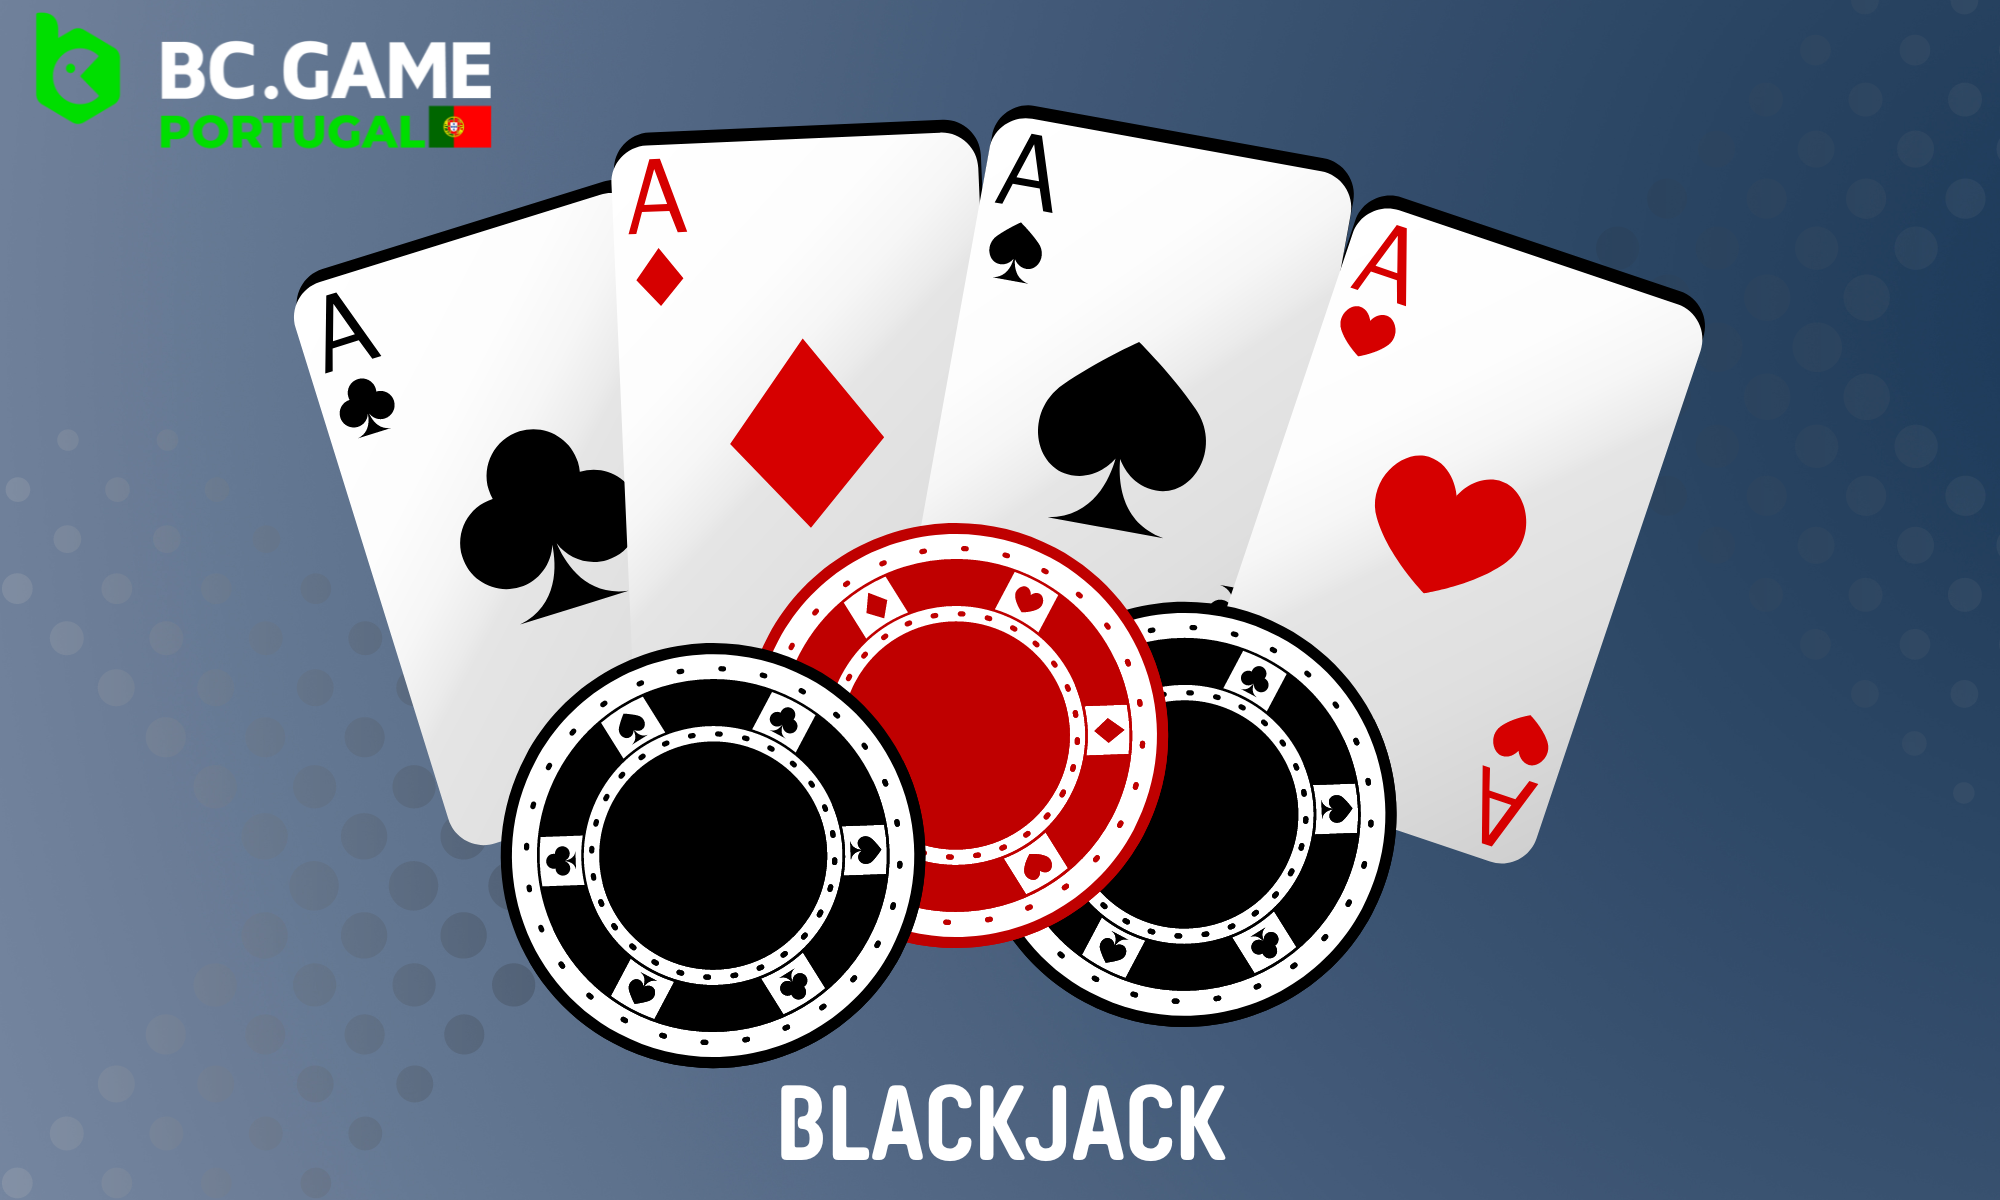 O Blackjack no BC Game está disponível em várias variantes